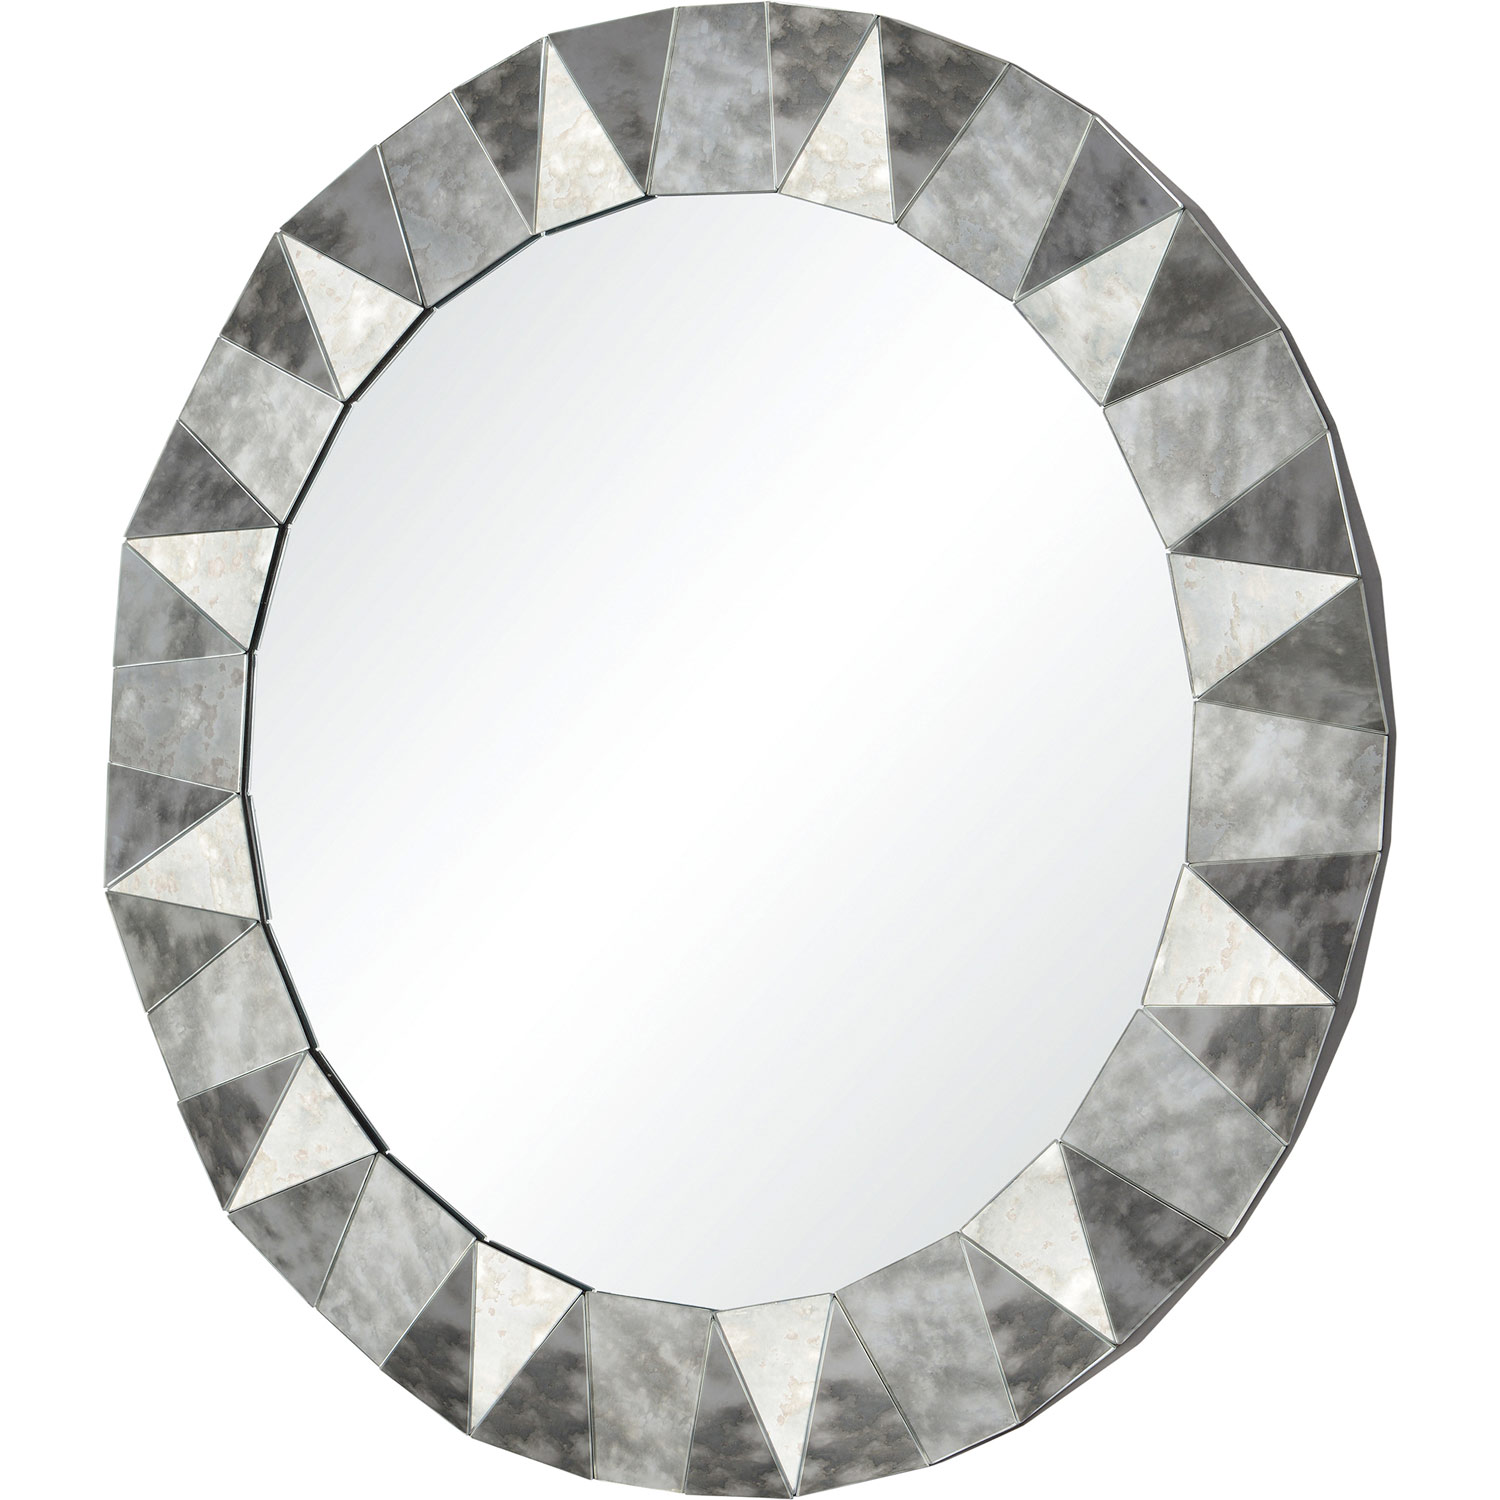 Ren-Wil Hadleigh Round Mirror - Antique Mirror